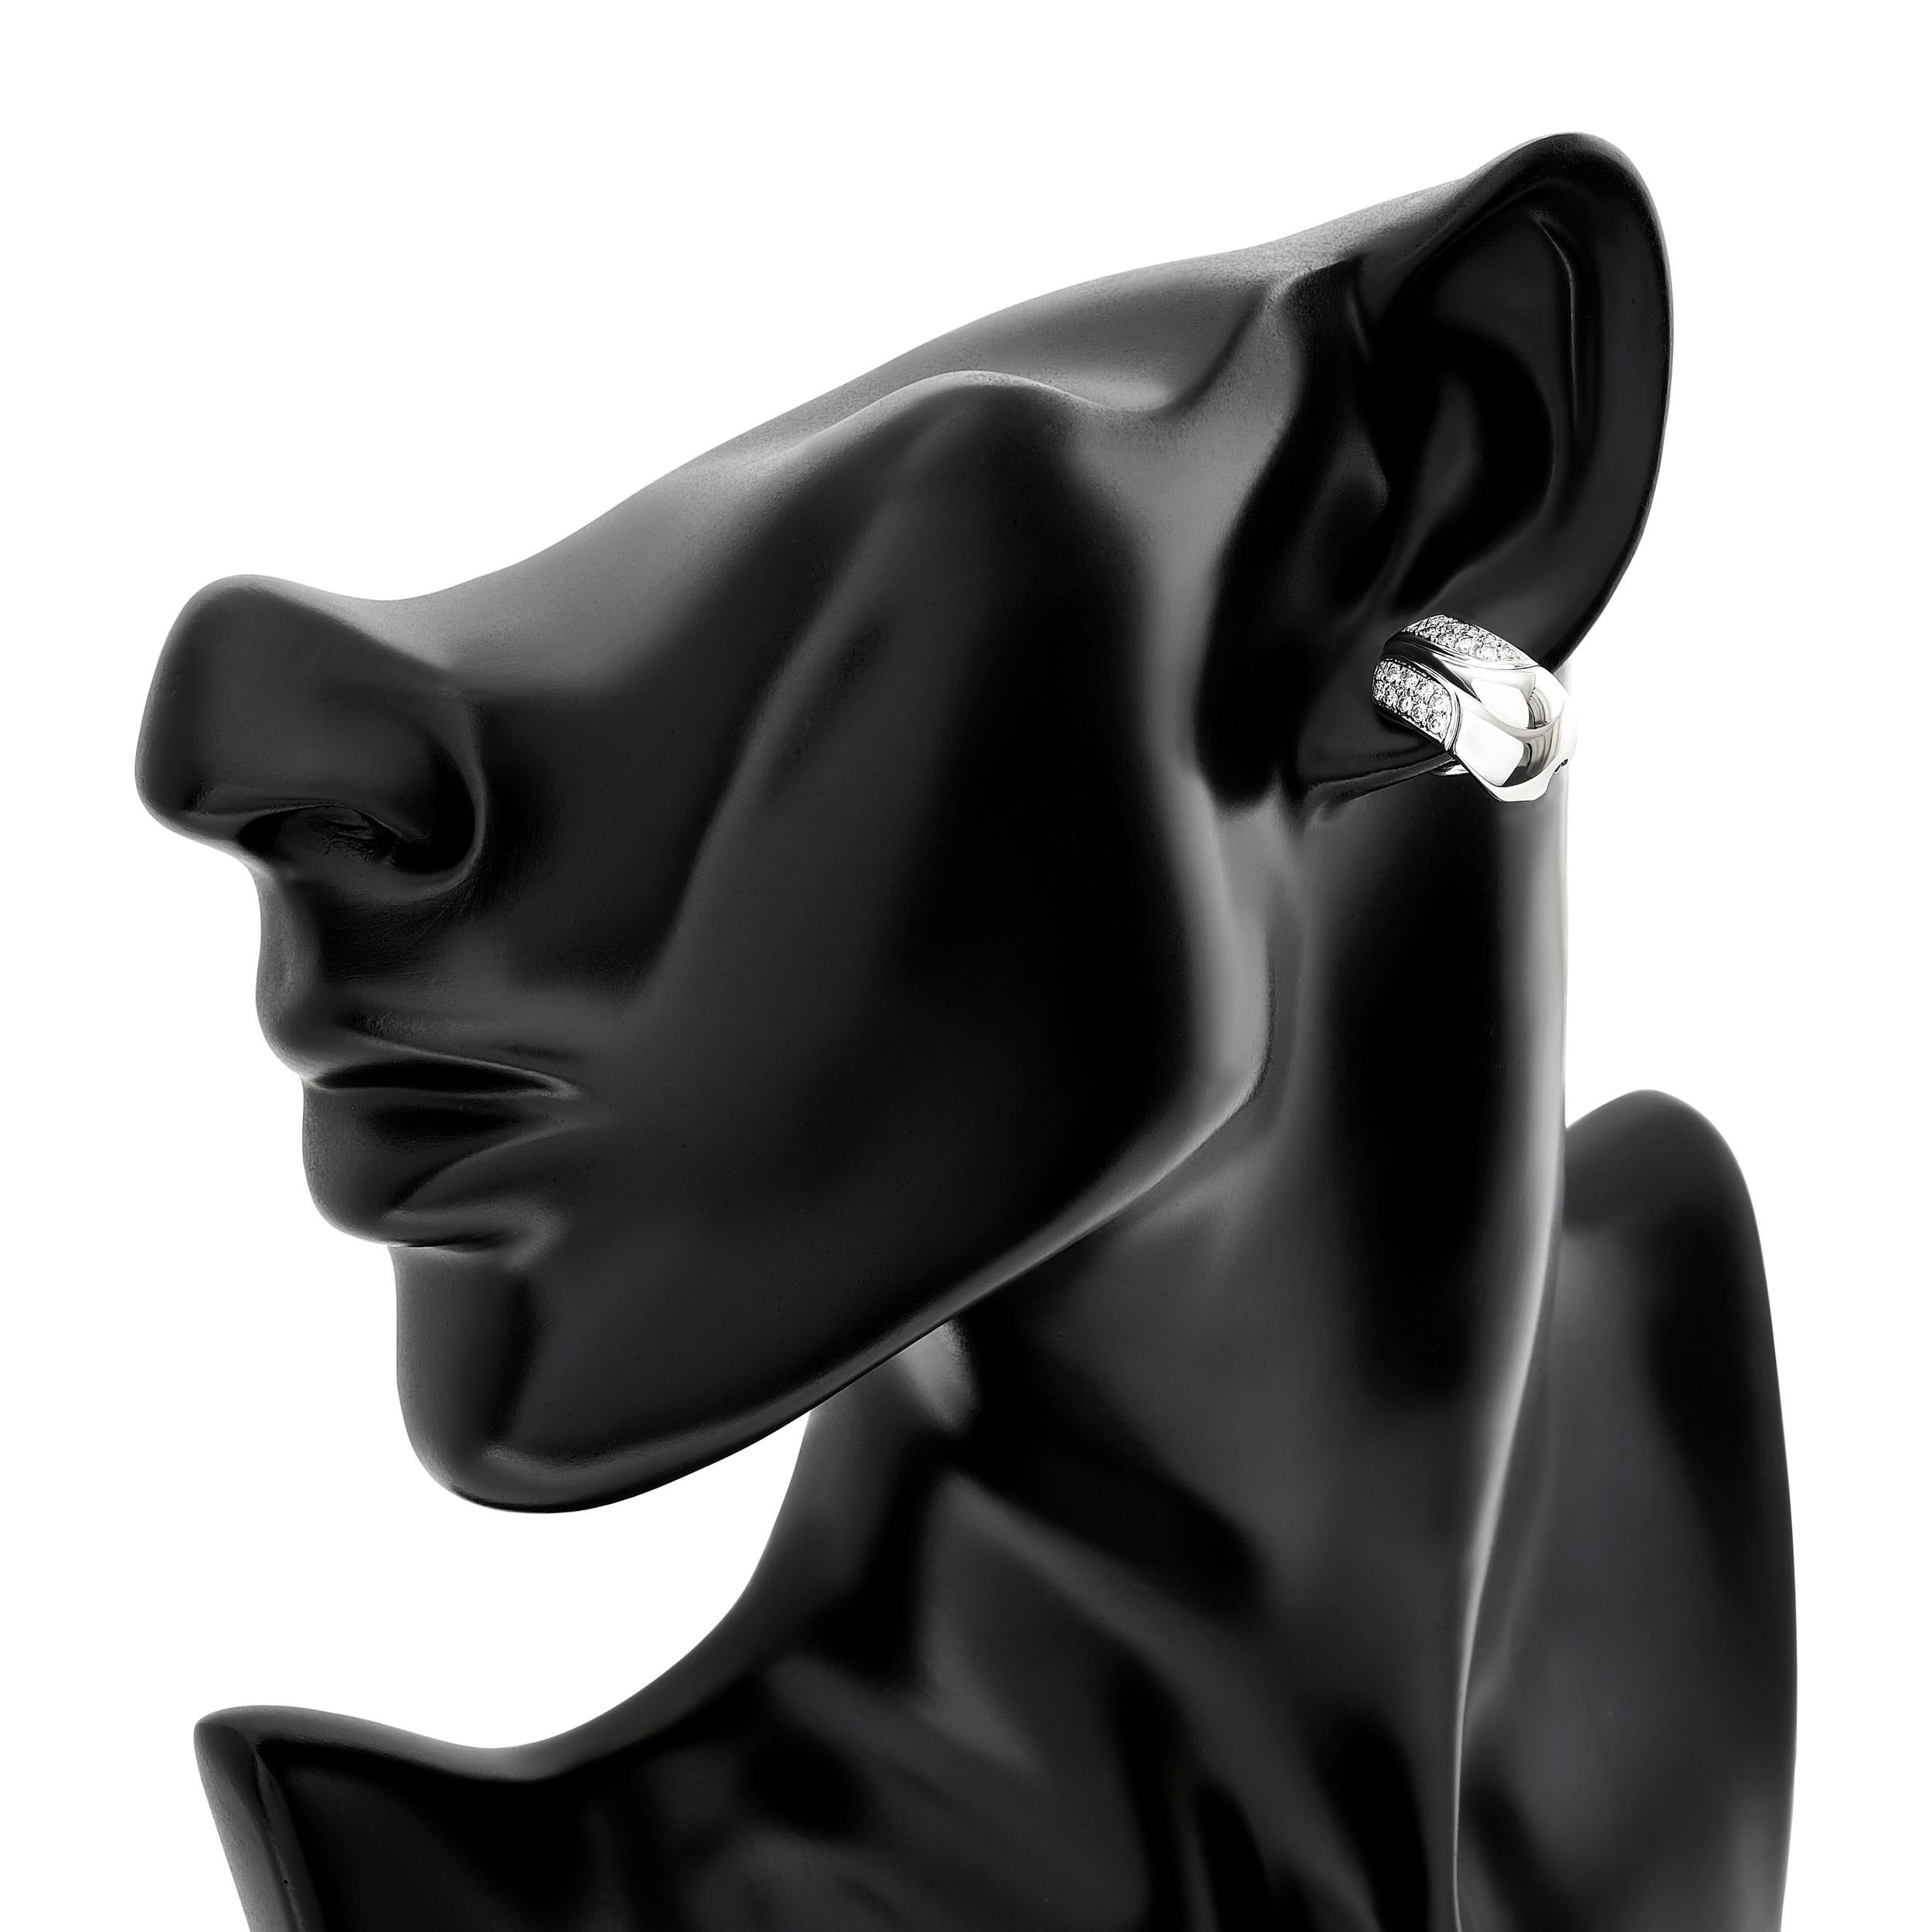 Diese Gubelin-Ohrringe haben einen zeitlosen Reiz und sind mit Diamanten und 18-karätigem Weißgold sorgfältig gefertigt.

Diese Ohrringe bestehen aus 40 runden Diamanten mit einem Gewicht von etwa 0,65 Karat. Die Diamanten haben die Farbe H und die